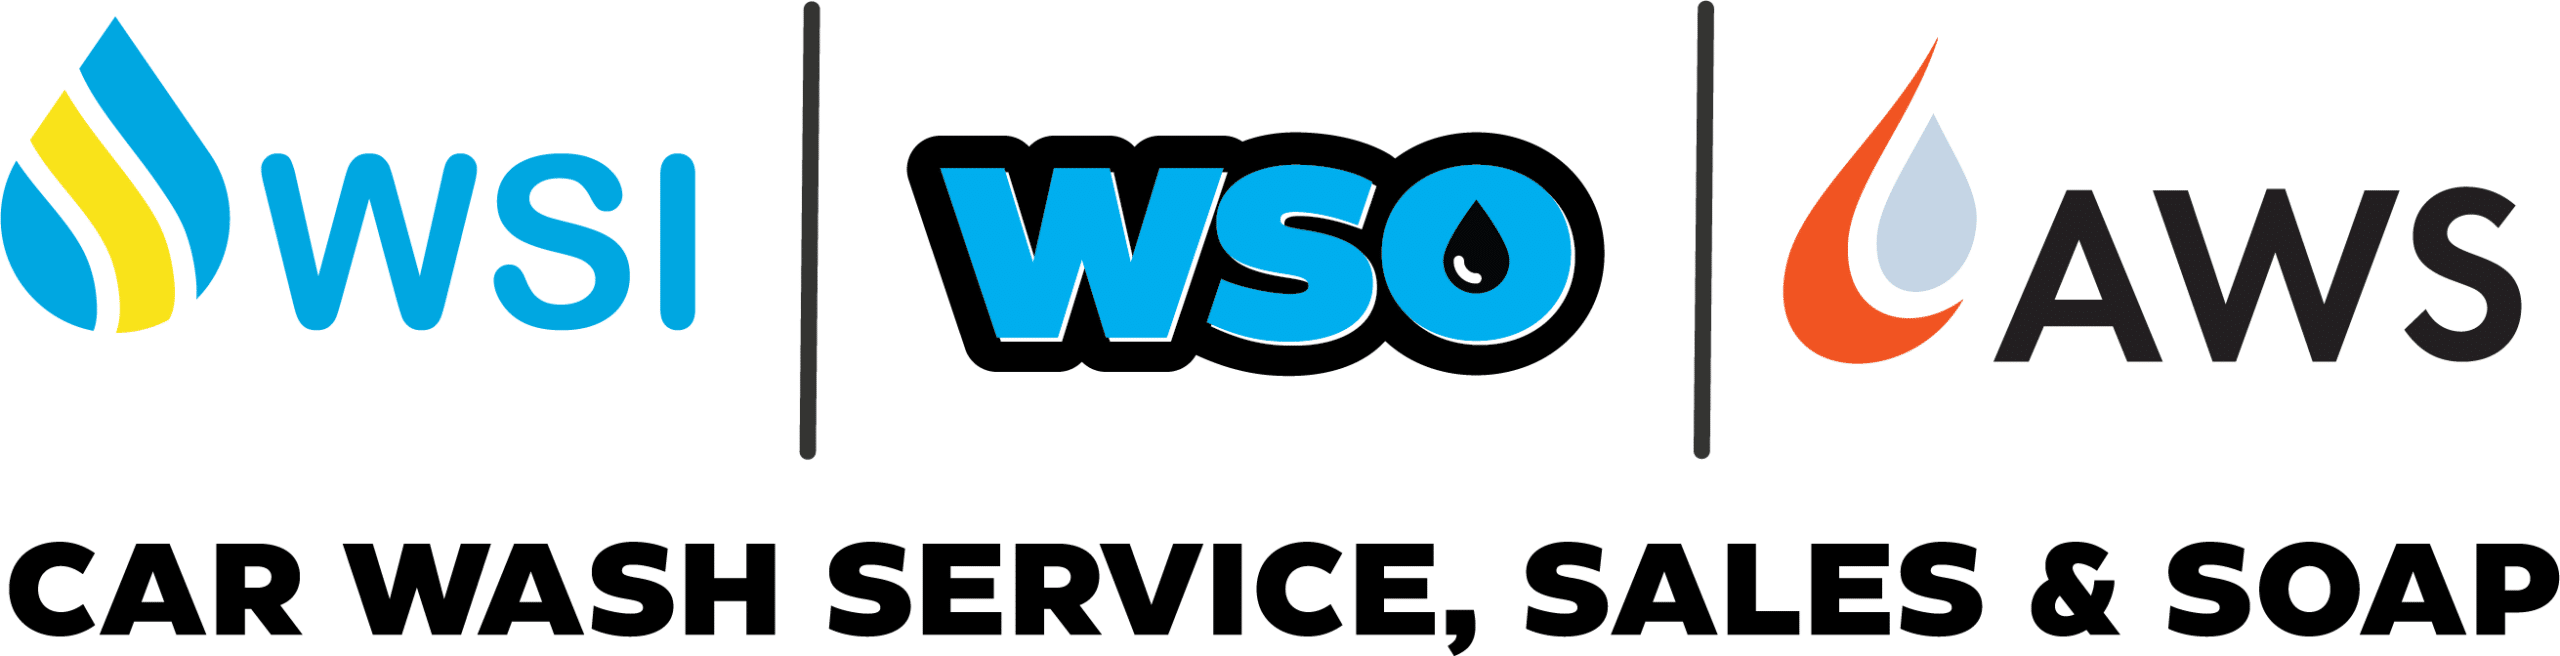 Commercial Car Wash Equipment | AutoWash Services | Wash Sales Inc